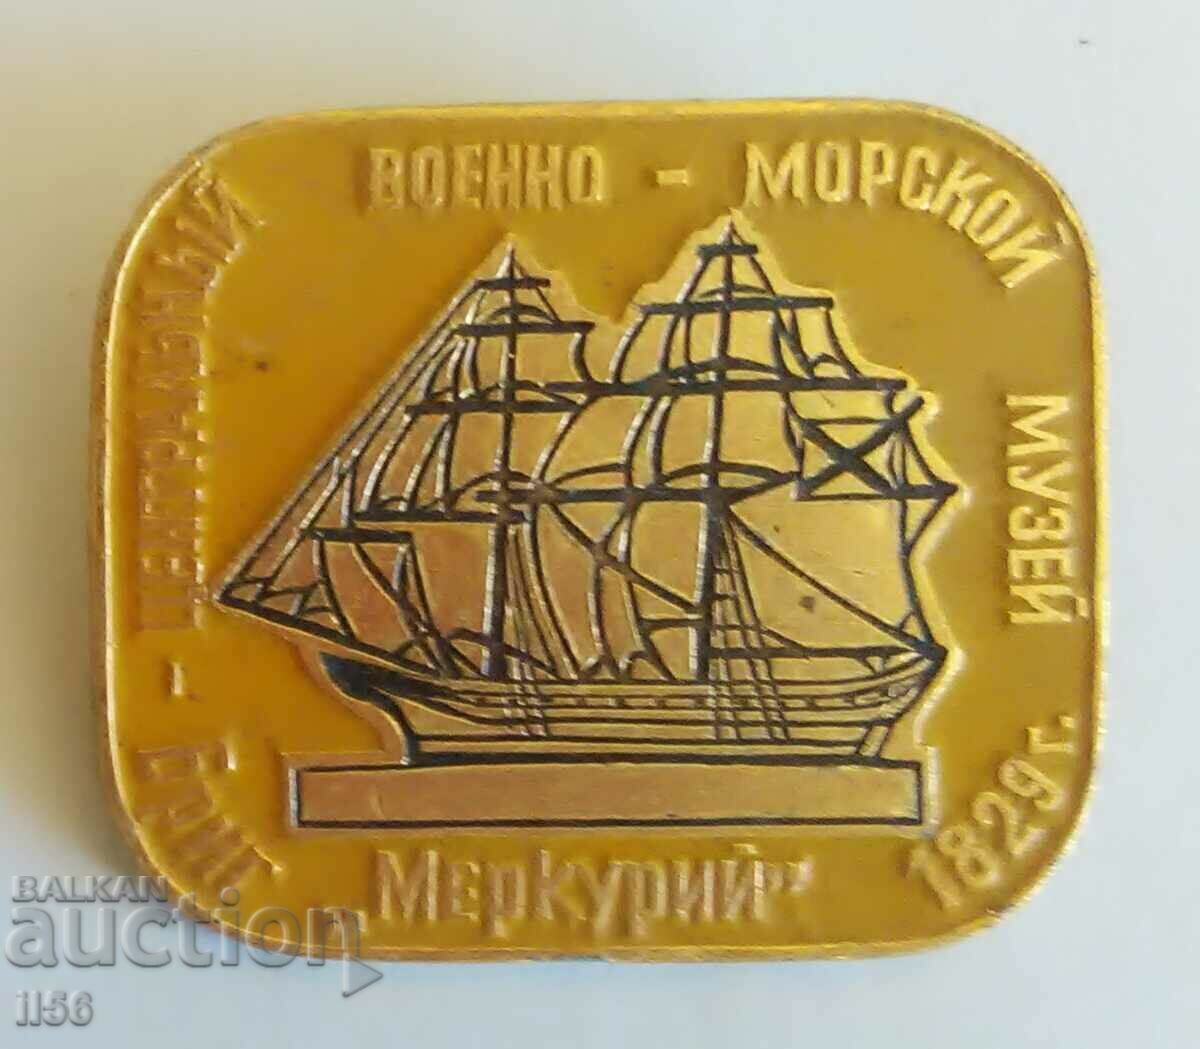 Ρωσία/ΕΣΣΔ - Σήμα - Πλοίο - Ταξιαρχία "Mercury"